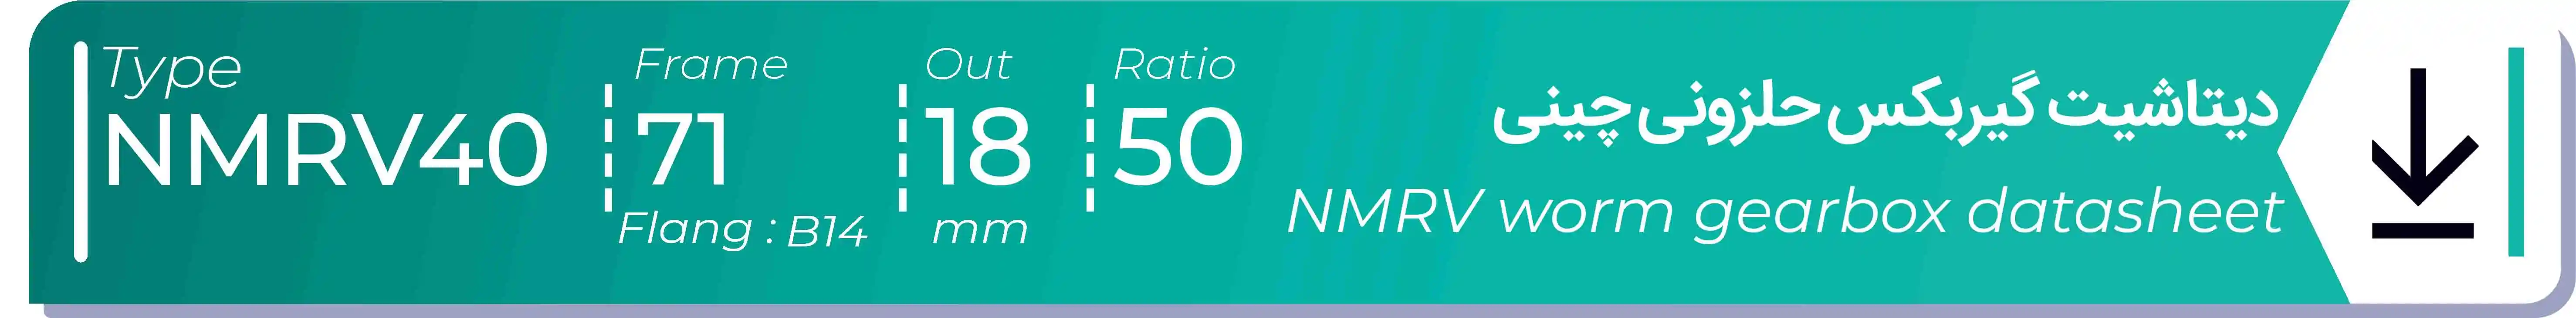  دیتاشیت و مشخصات فنی گیربکس حلزونی چینی   NMRV40  -  با خروجی 18- میلی متر و نسبت50 و فریم 71